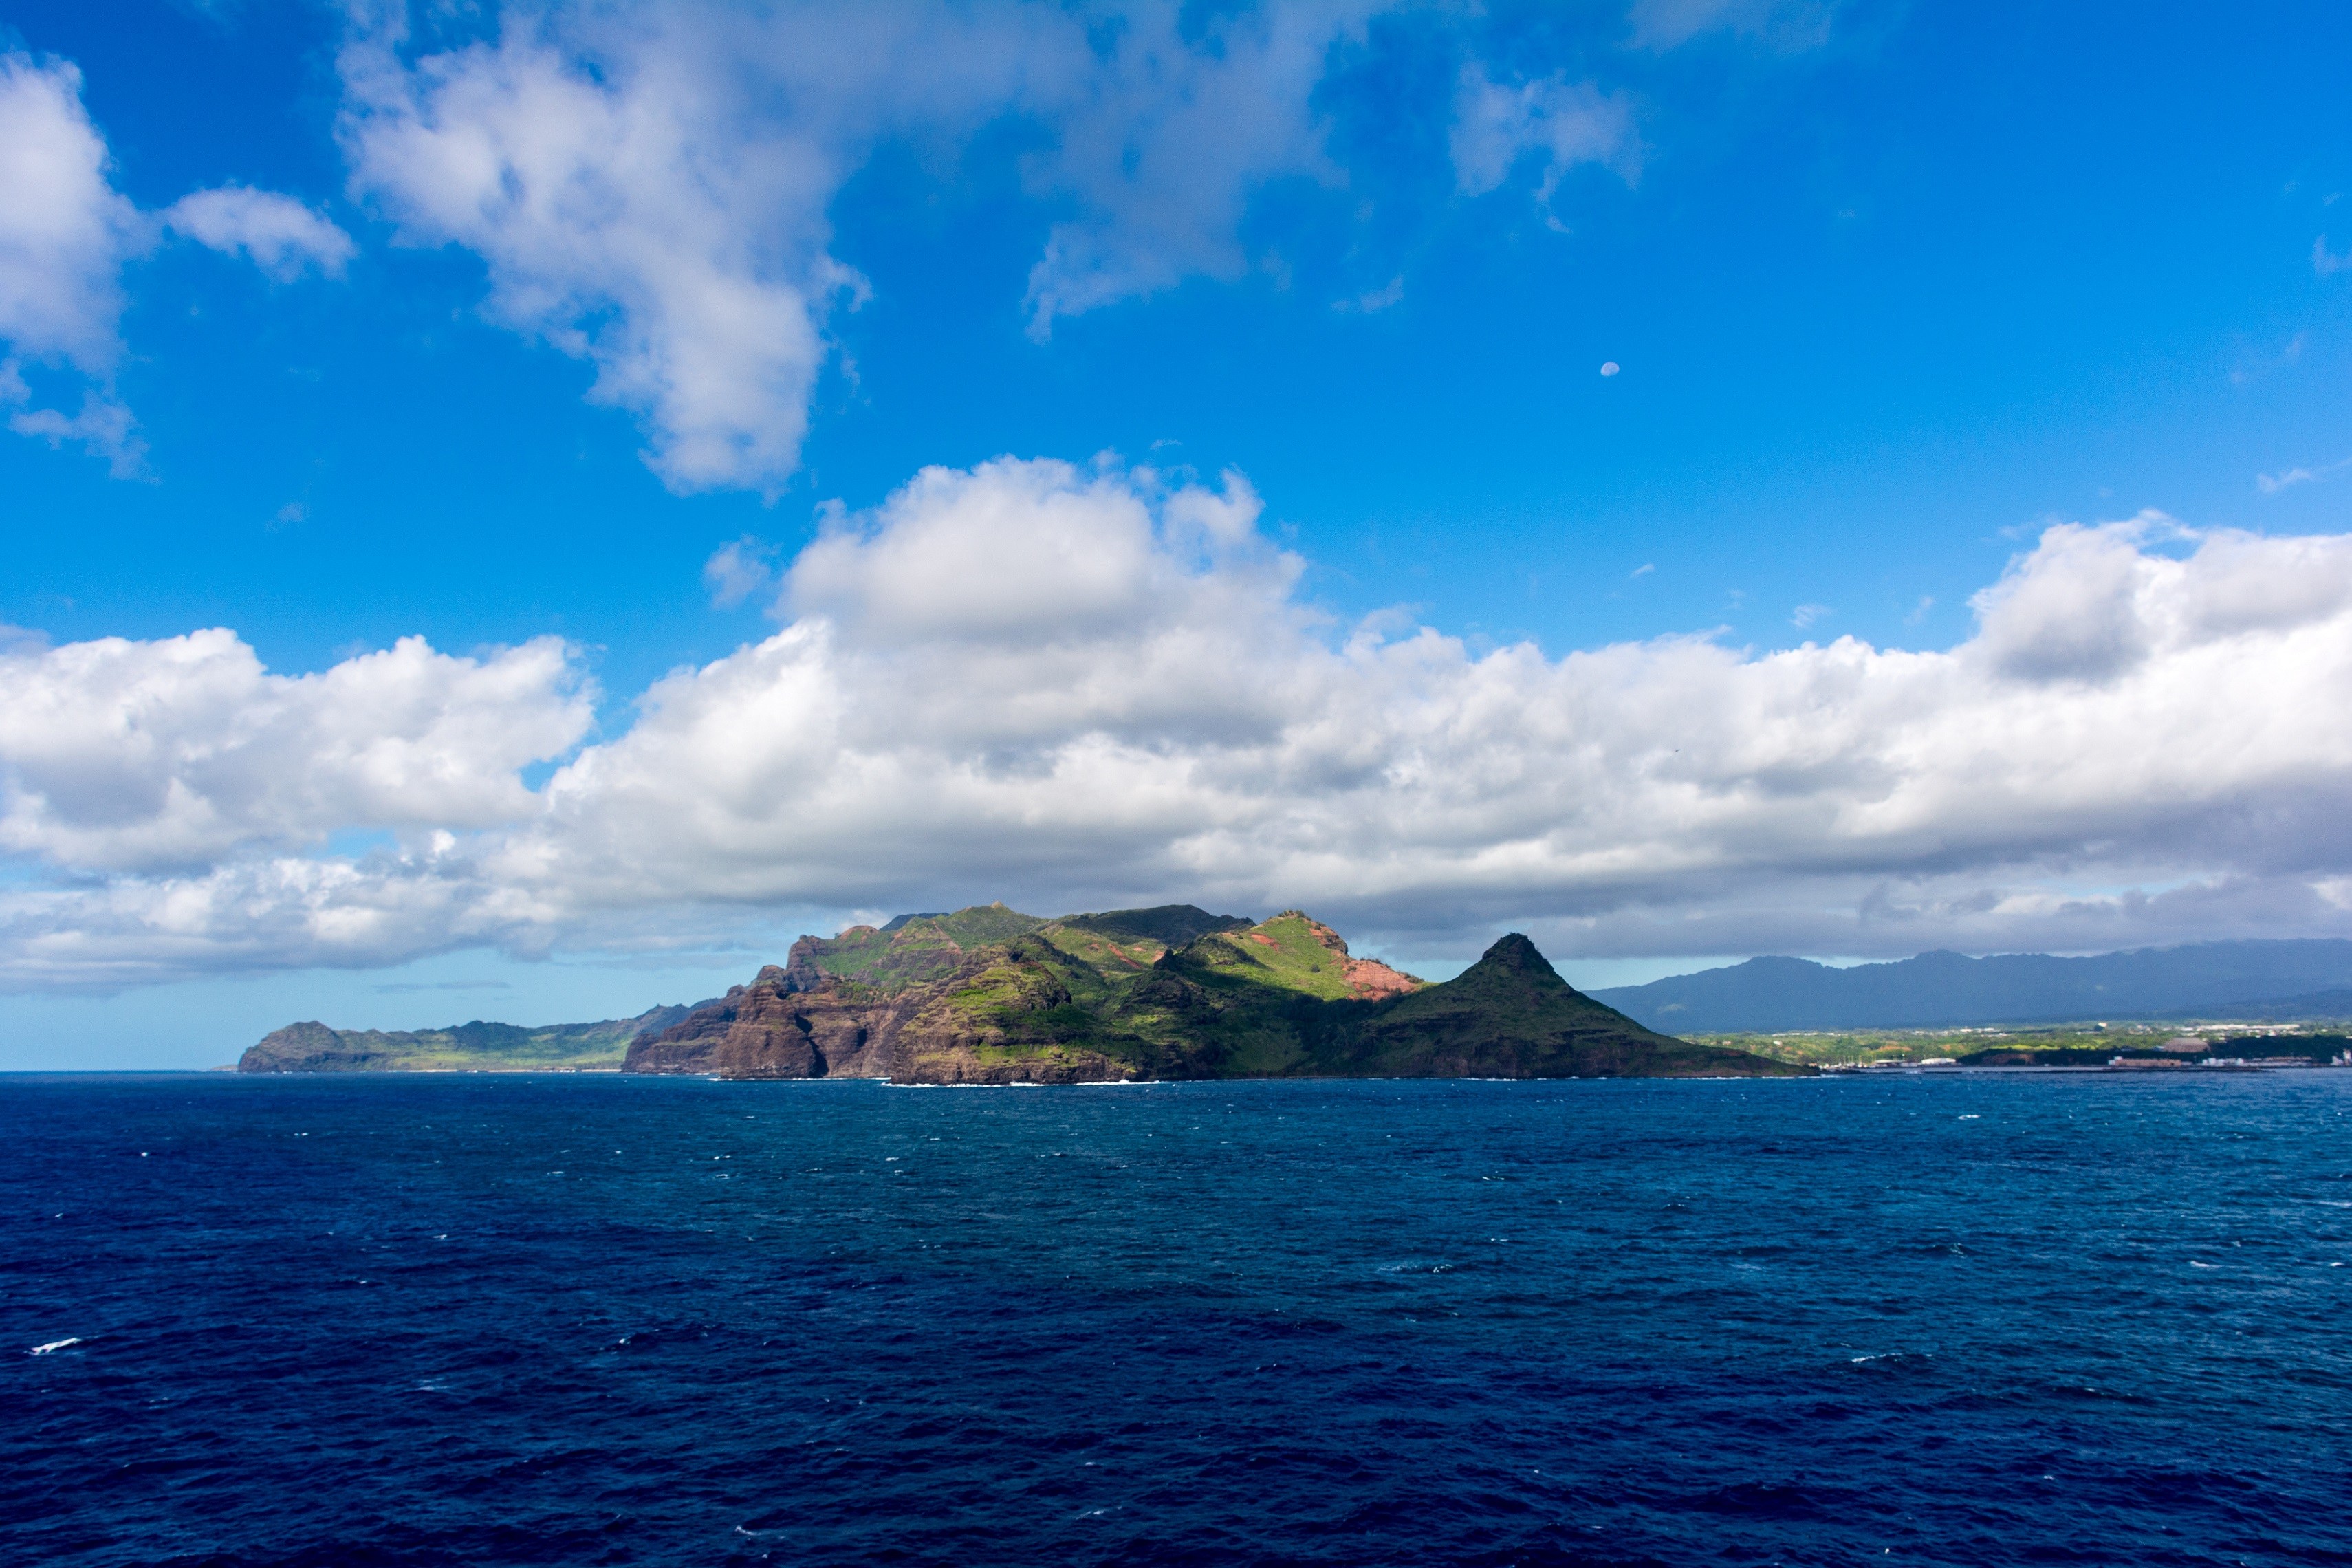 Island of Niihau from afar